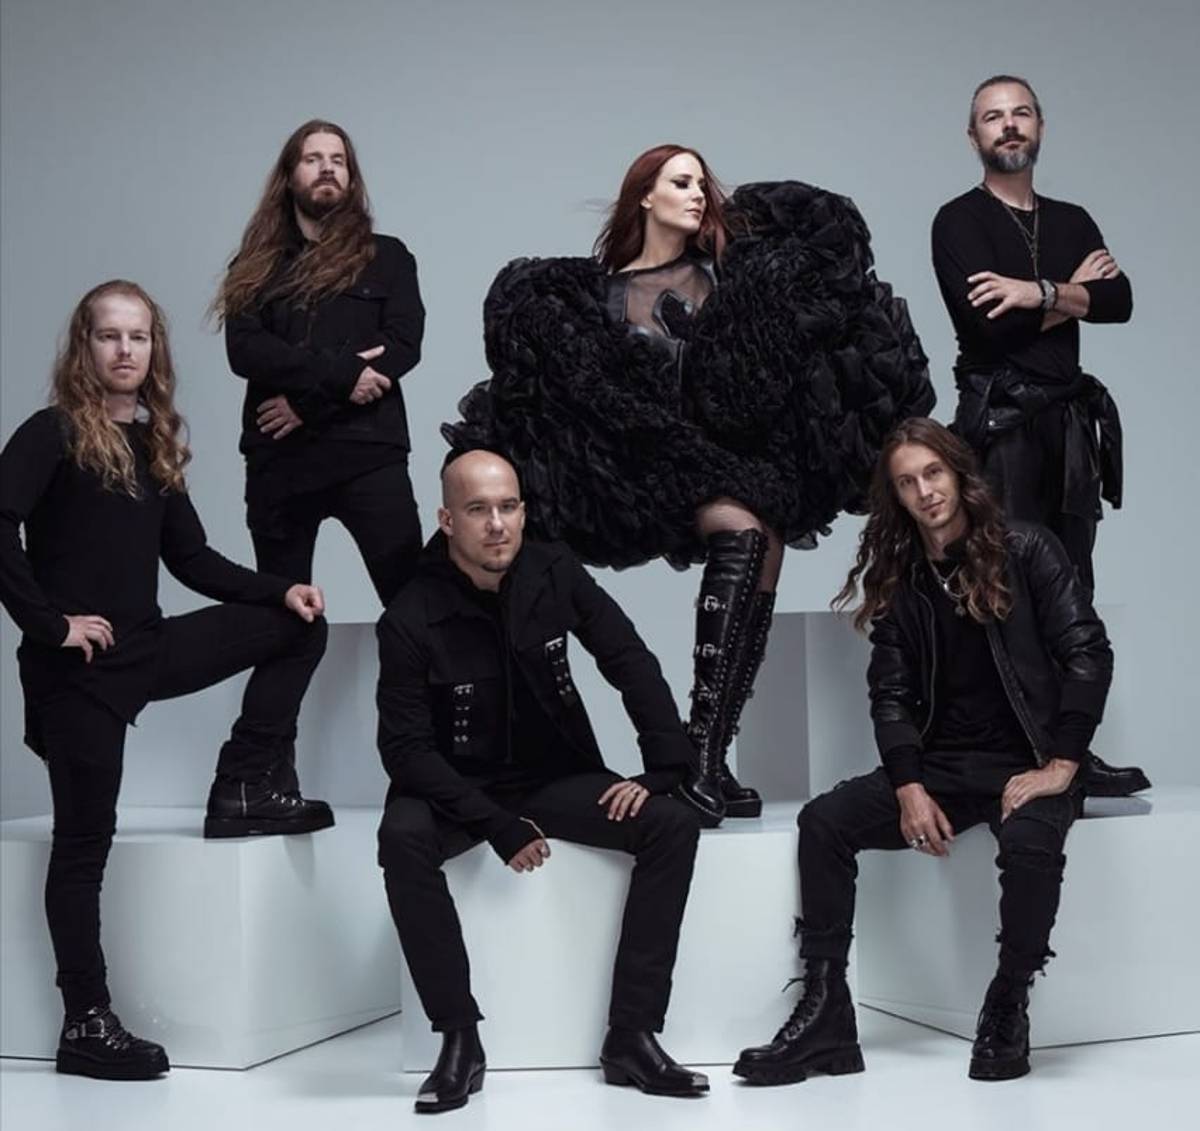 Una de las agrupaciones de metal sinfónico más importantes a nivel mundial: Epica, ofrecerá un concierto en el Foro del Lago de León el próximo sábado 21 de mayo.